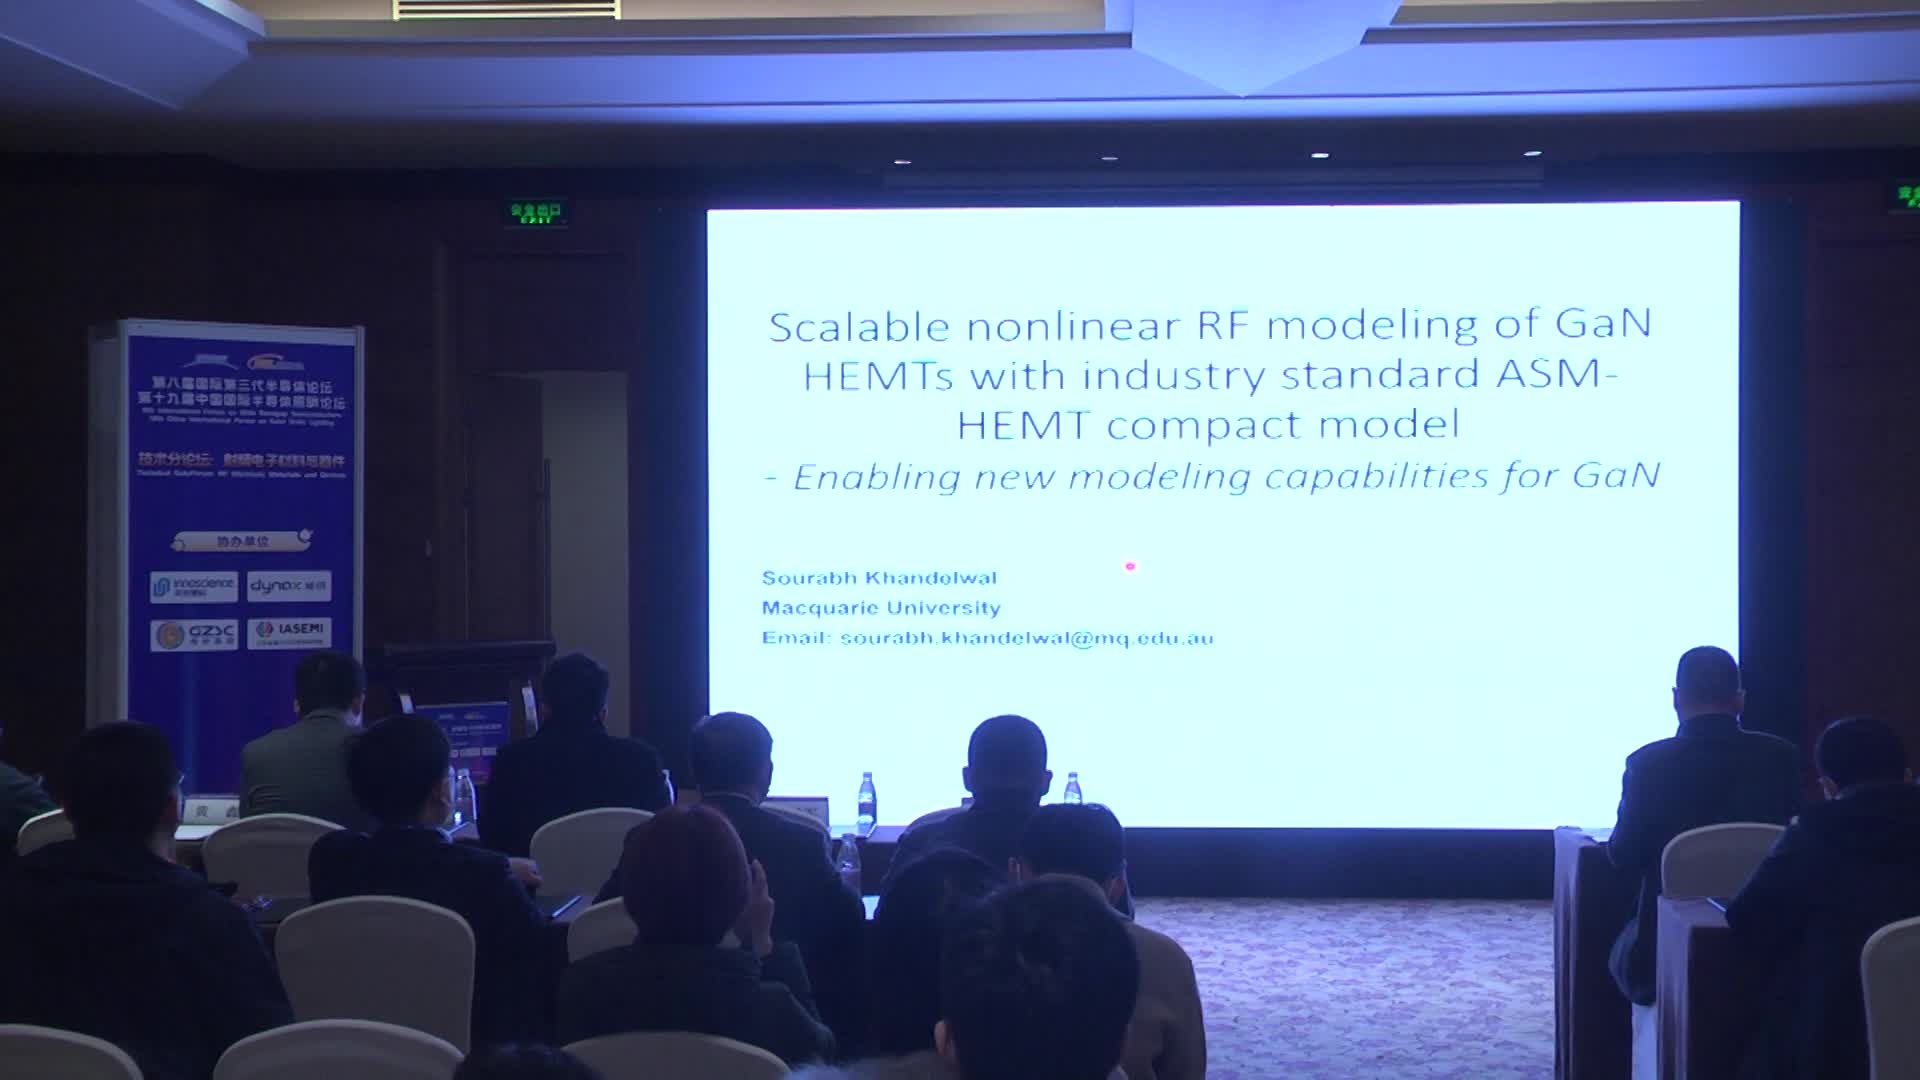 澳大利亚麦考瑞大学教授Sourabh KHANDELWAL：Scalable nonlinear RF modeling of GaN HEMTs with industry standard ASM